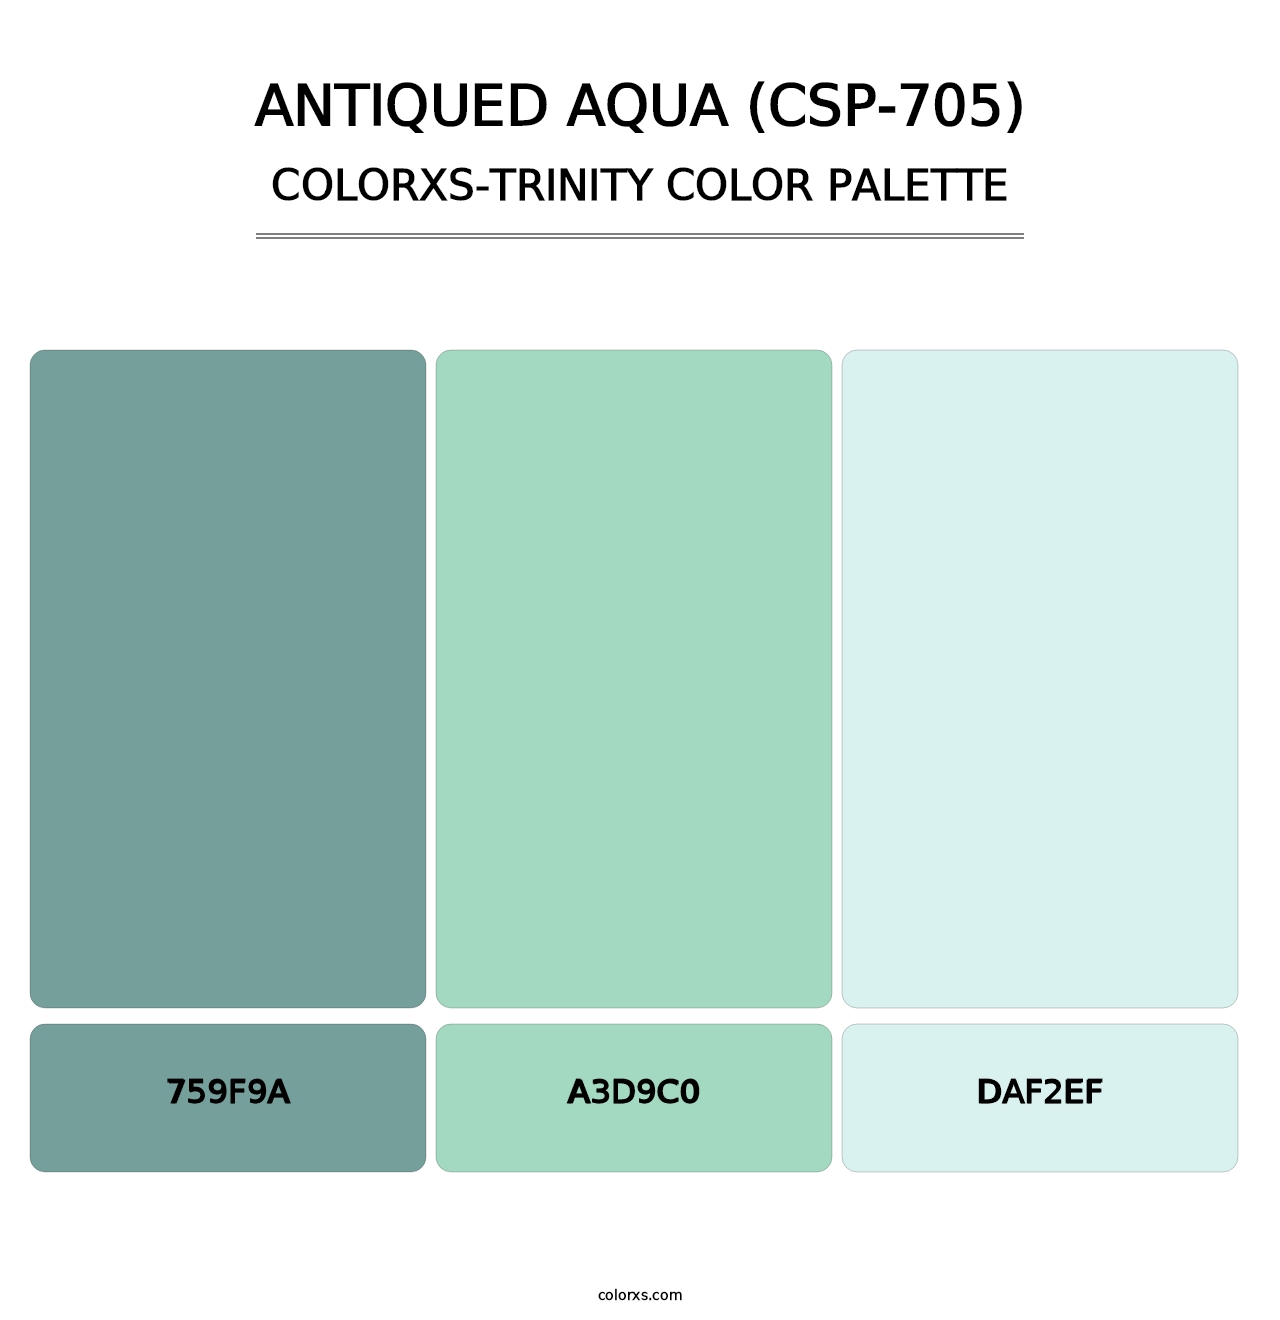 Antiqued Aqua (CSP-705) - Colorxs Trinity Palette